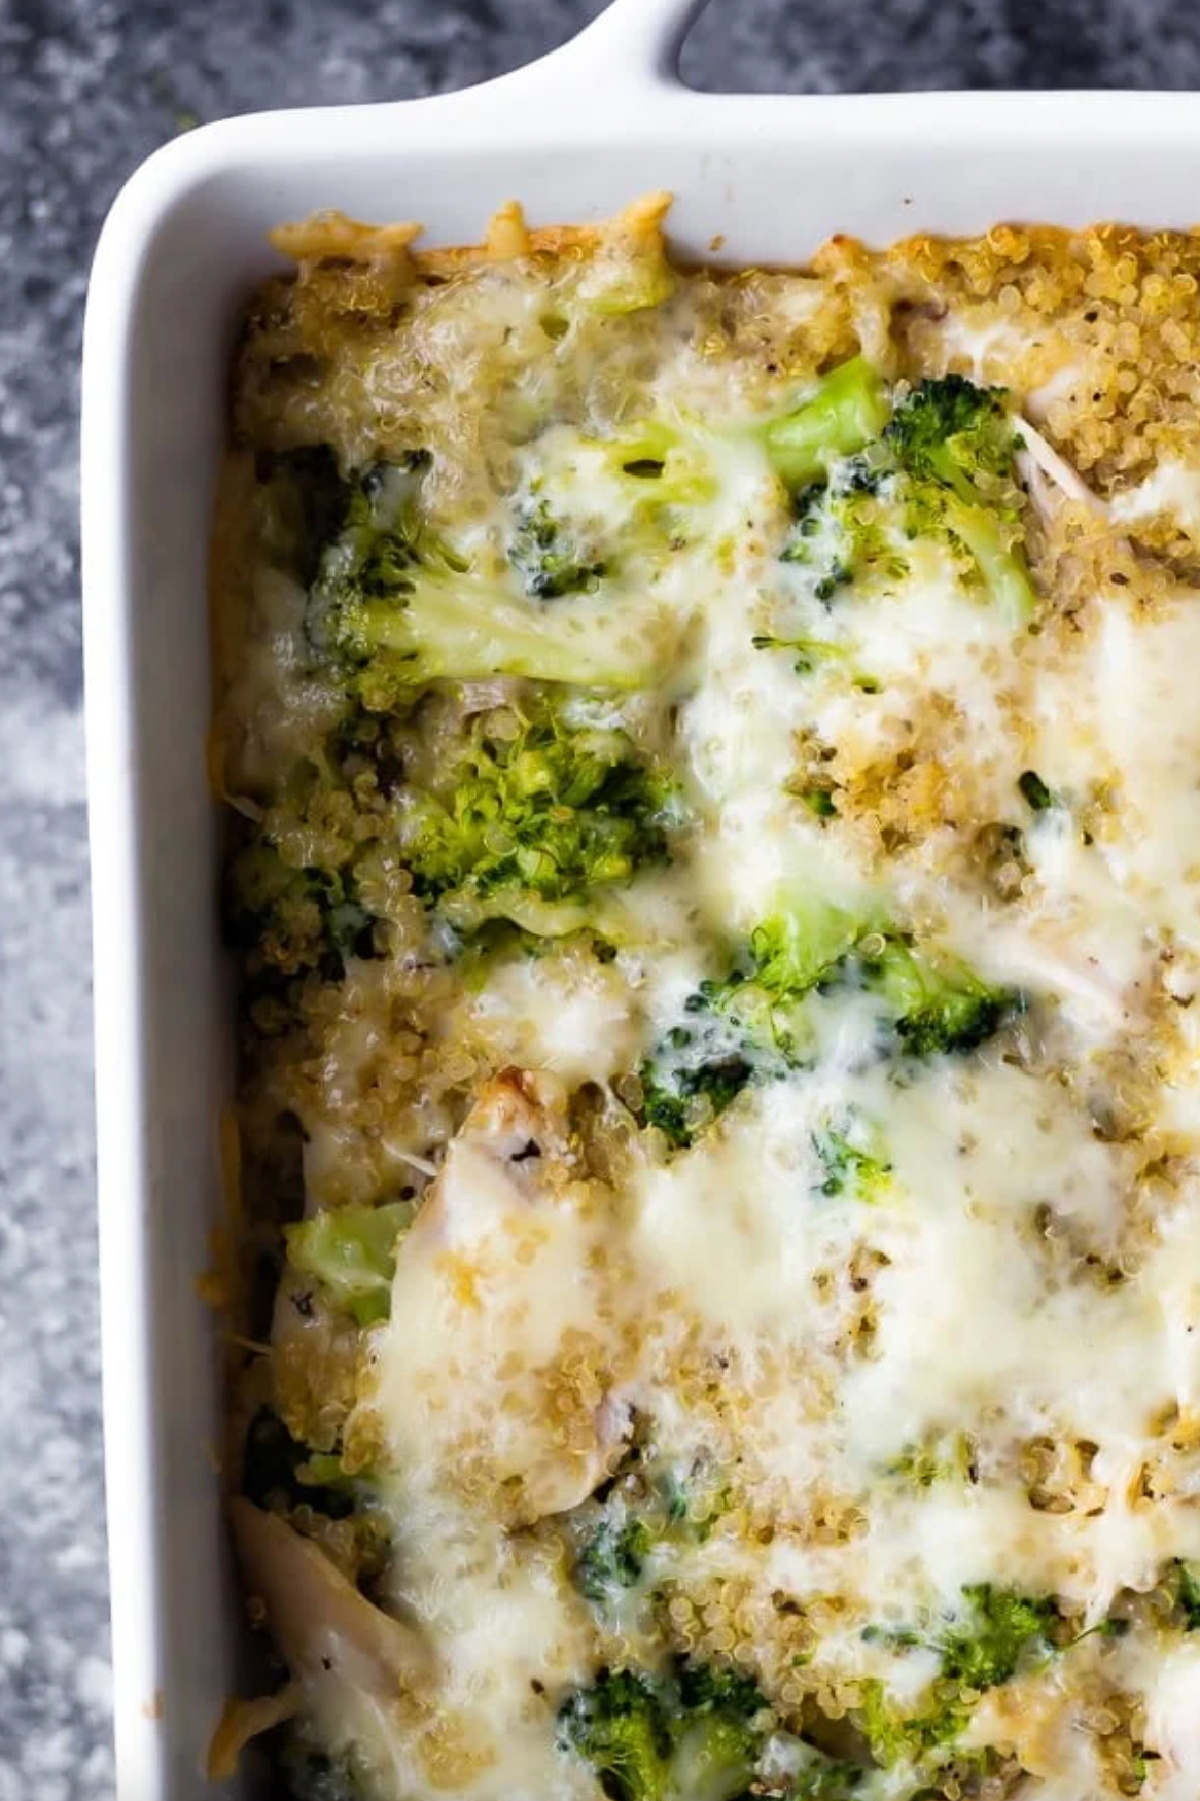 Broccoli Quinoa Casserole in baking dish